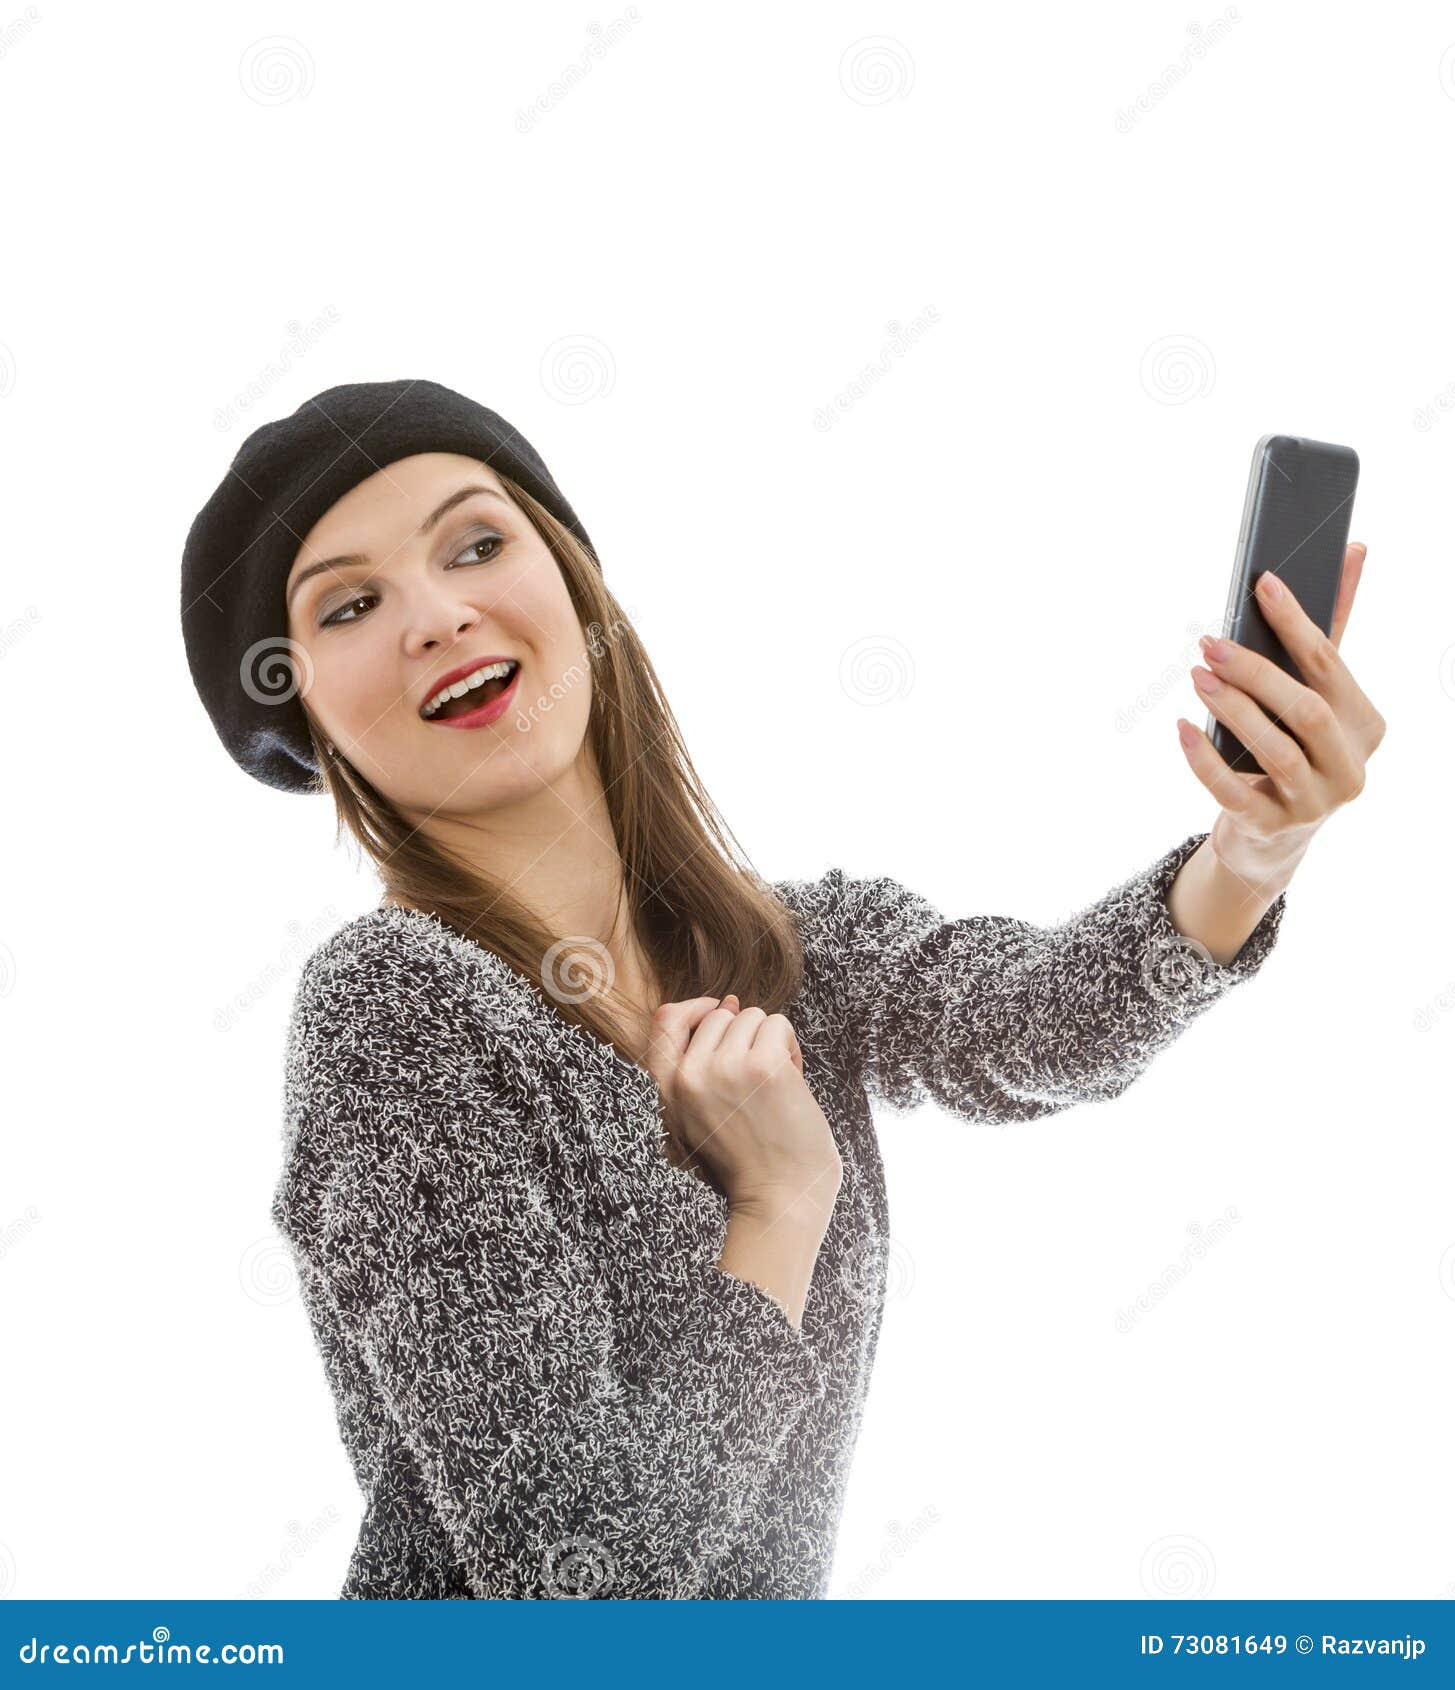 Frau, die ein selfie nimmt. Junge Frau, die ein selfie mit einem Smartphone lokalisiert gegen einen weißen Hintergrund nimmt